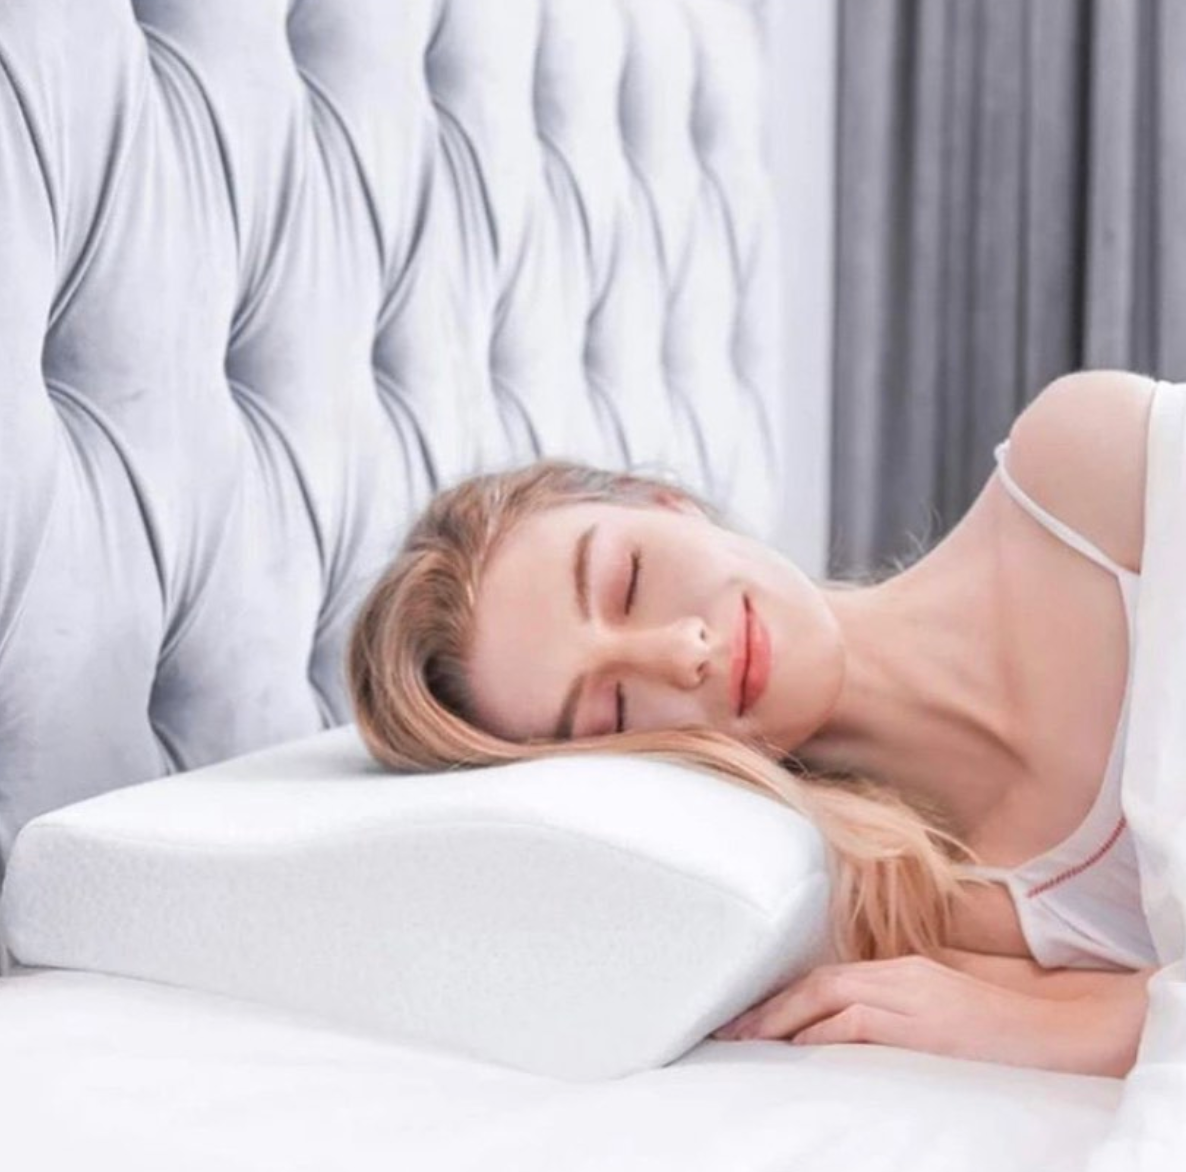 Haben Sie Probleme, einen entspannten und komfortablen Schlaf zu finden? Wechseln Sie Ihr Schlafkissen